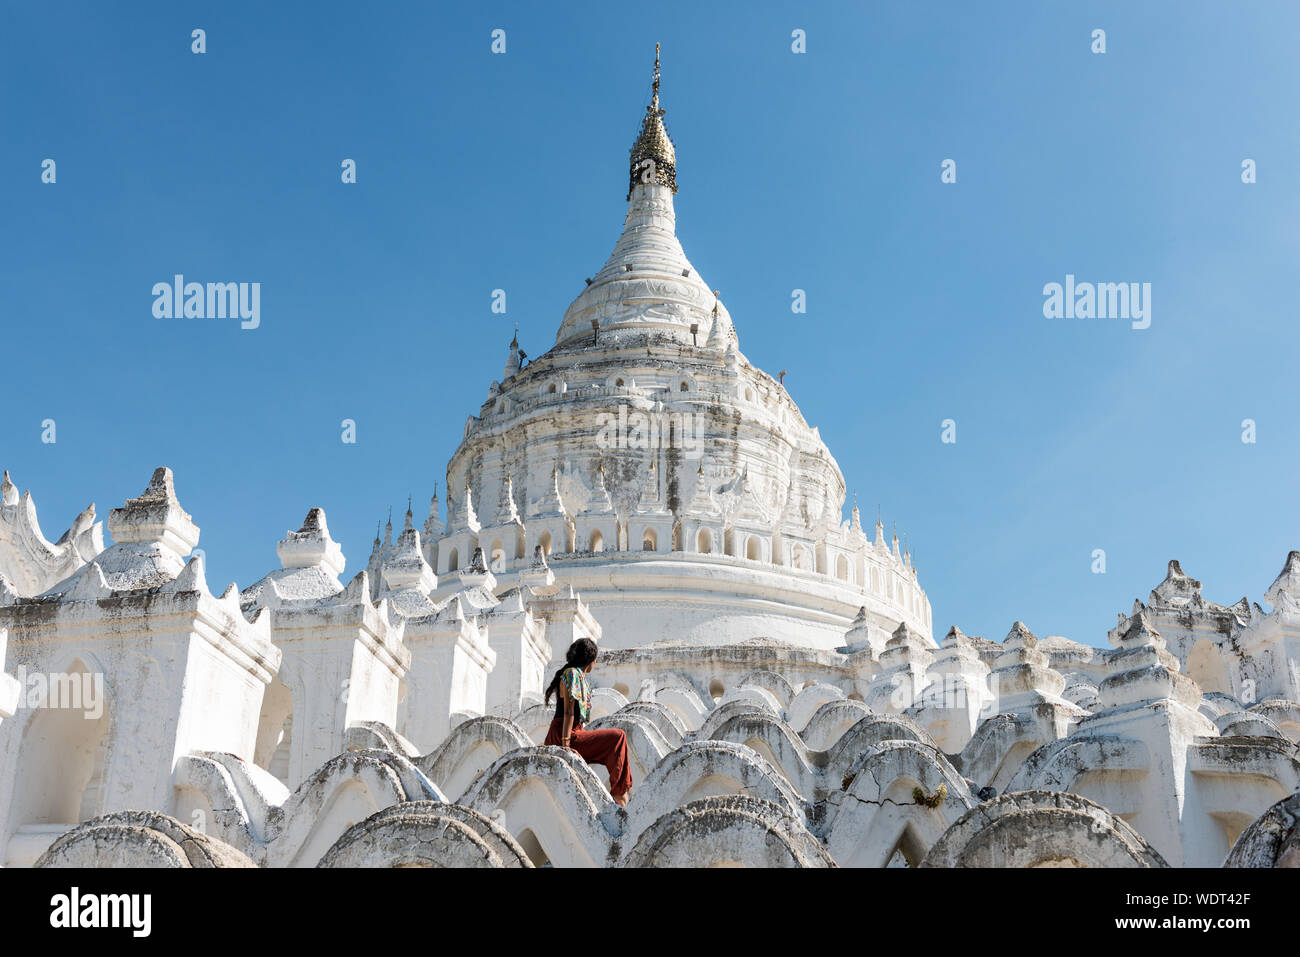 Ampio angolo di immagine del giovane turista a Pagoda Hsinbyume, un famoso tempio buddista dipinto in bianco, punto di riferimento del Myanmar, situato vicino a Mandalay Foto Stock